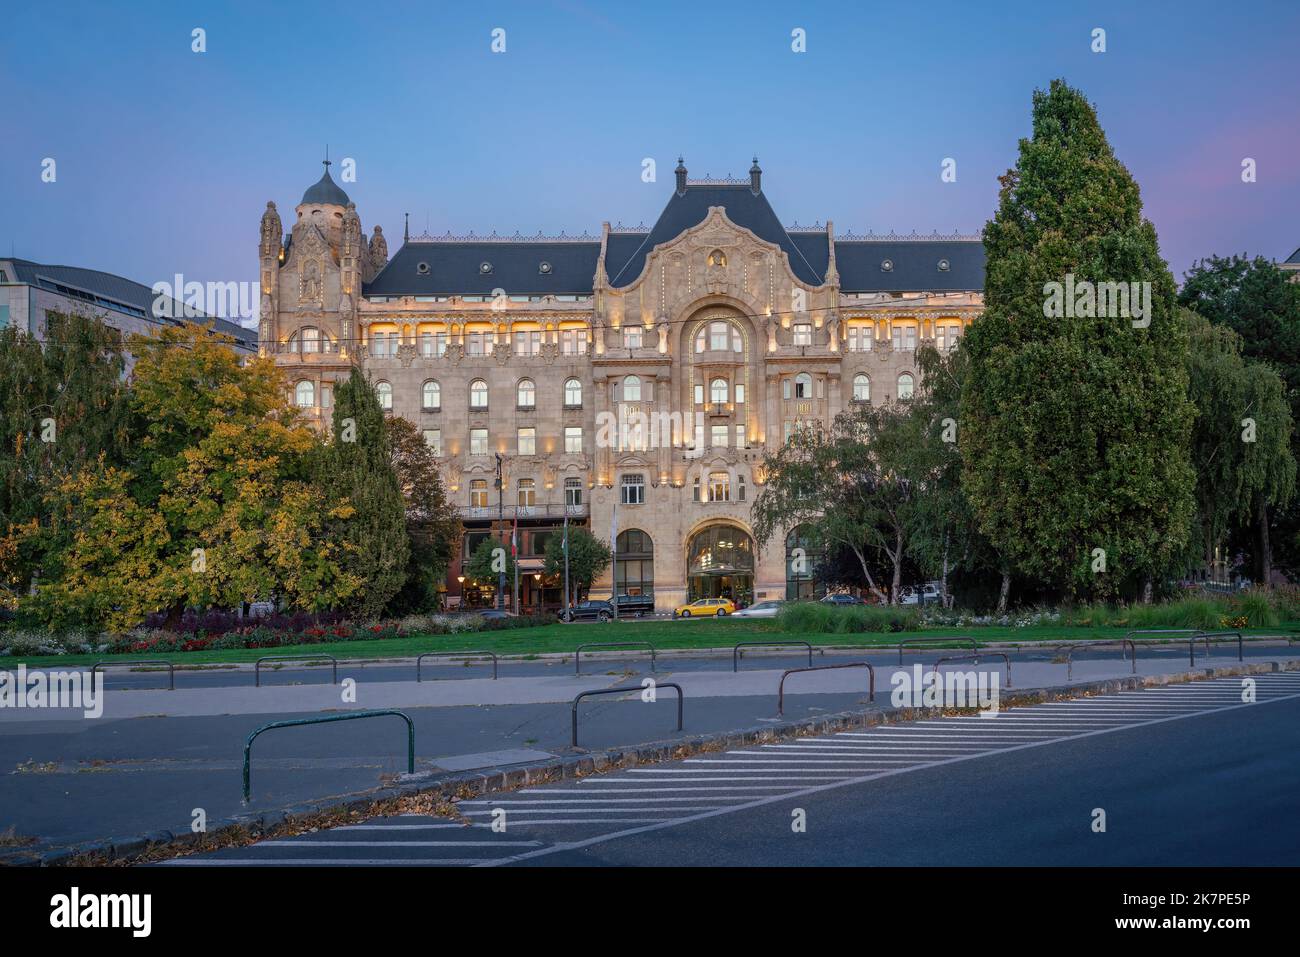 Gresham Palace at sunset - Budapest, Hungary Stock Photo